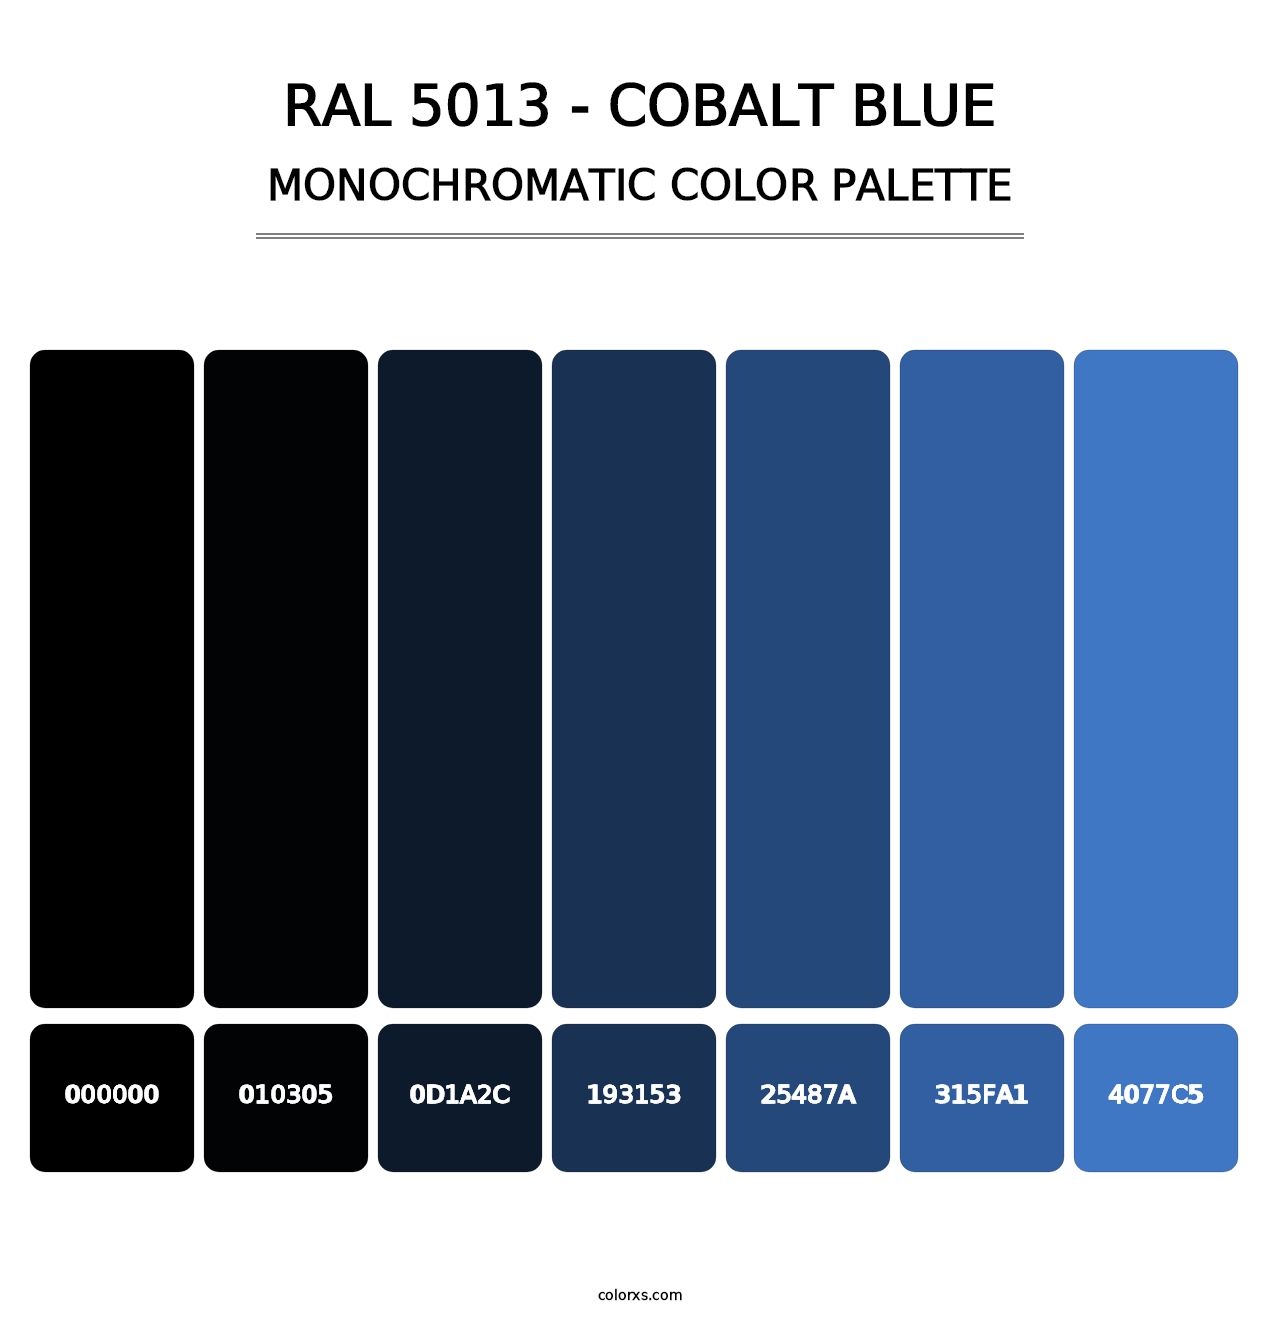 RAL 5013 - Cobalt Blue - Monochromatic Color Palette